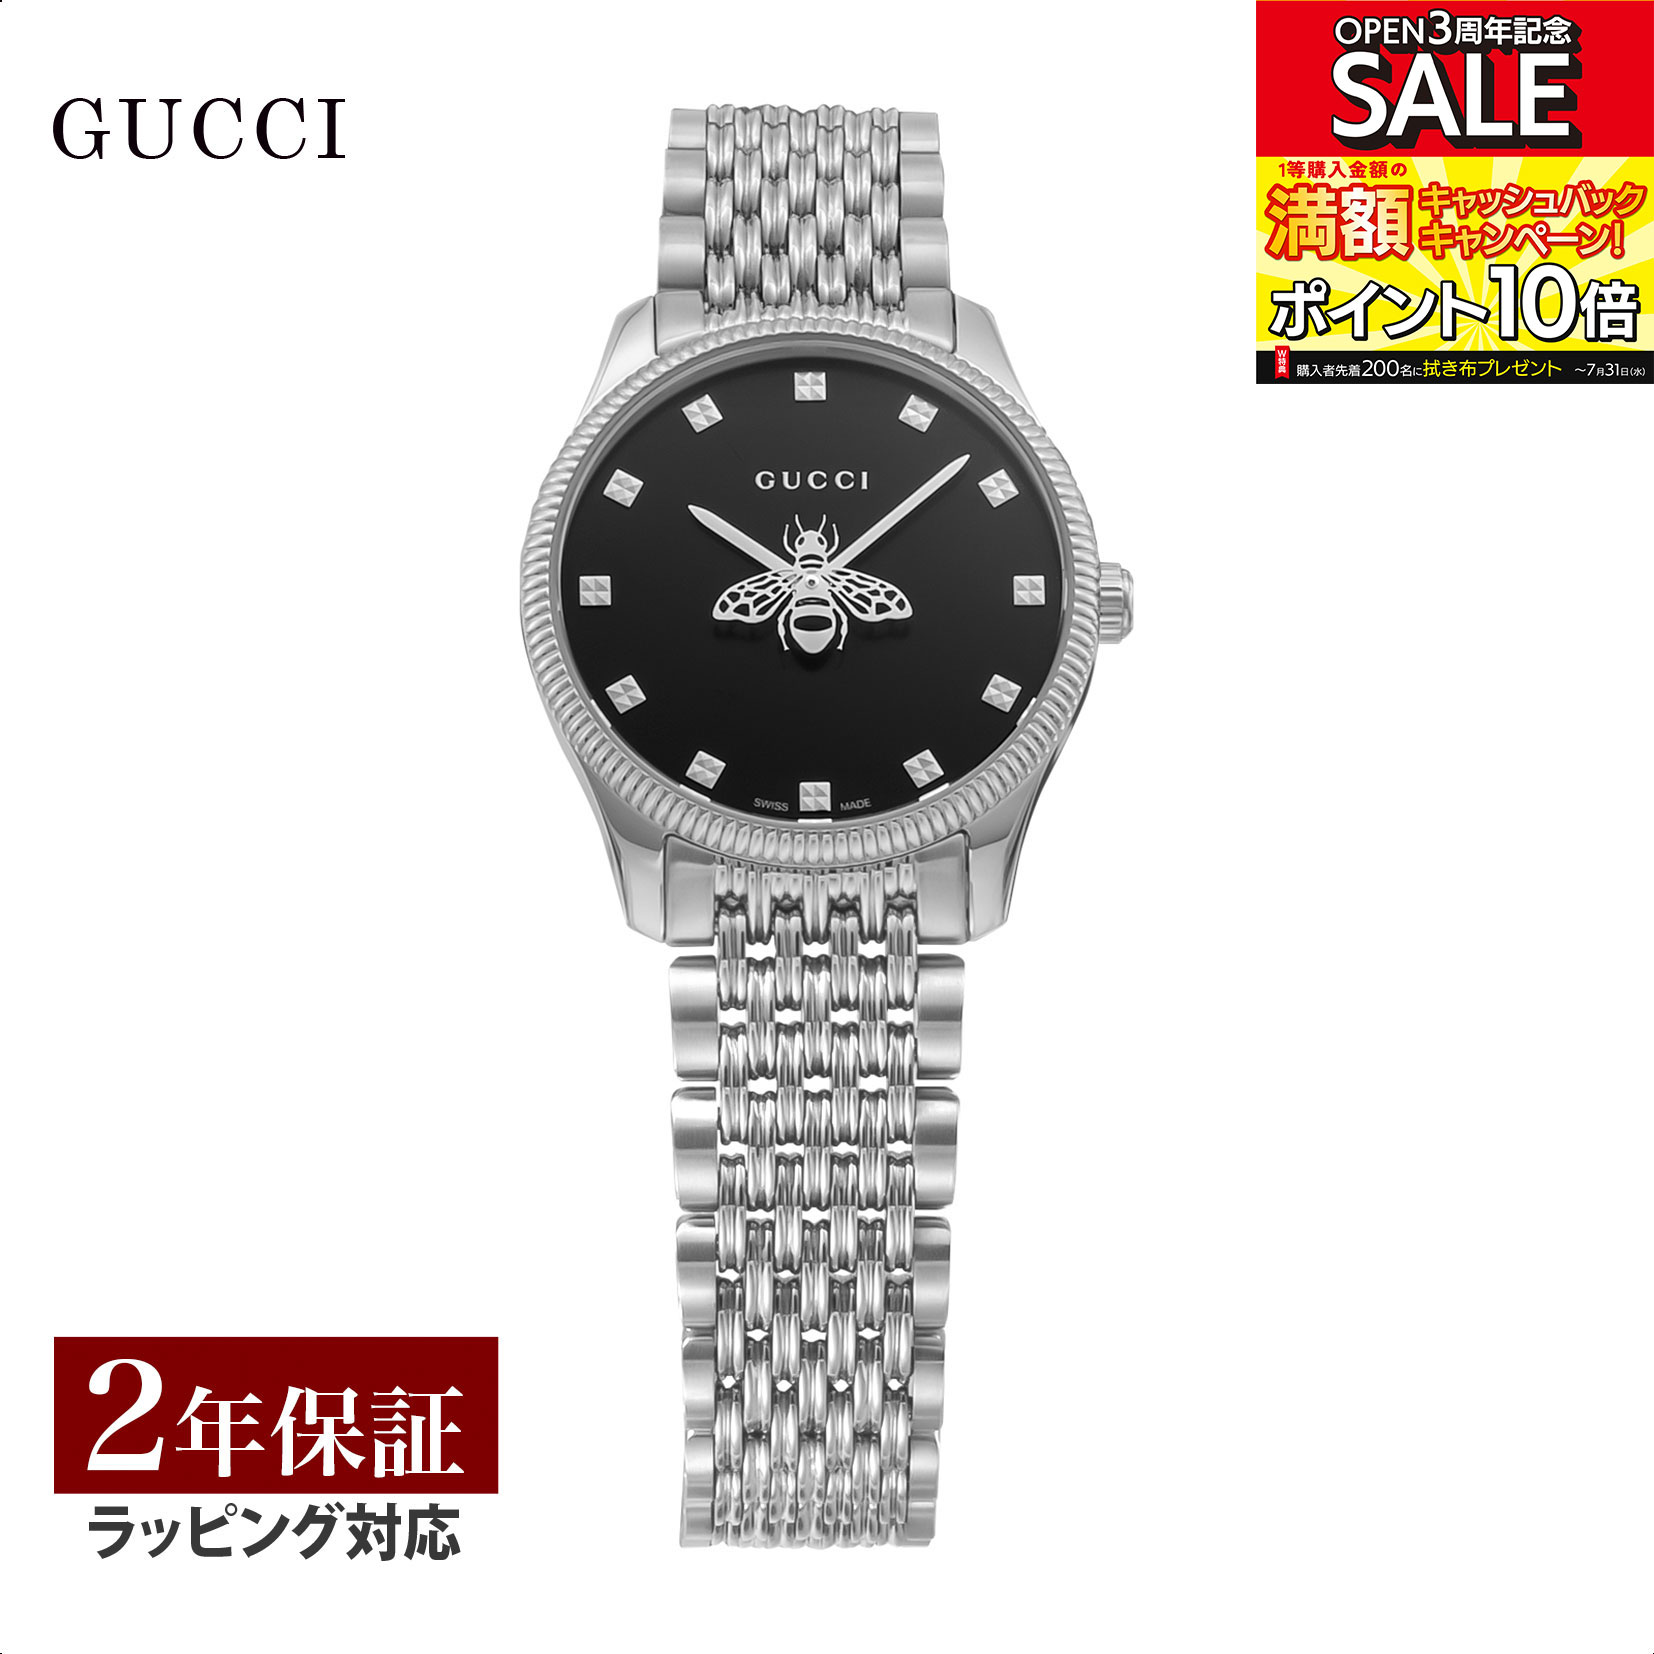 グッチ GUCCI レディース 時計 G-TIMELESS Gタイムレス クォーツ ブラック YA1265020 時計 腕時計 高級腕時計 ブランド